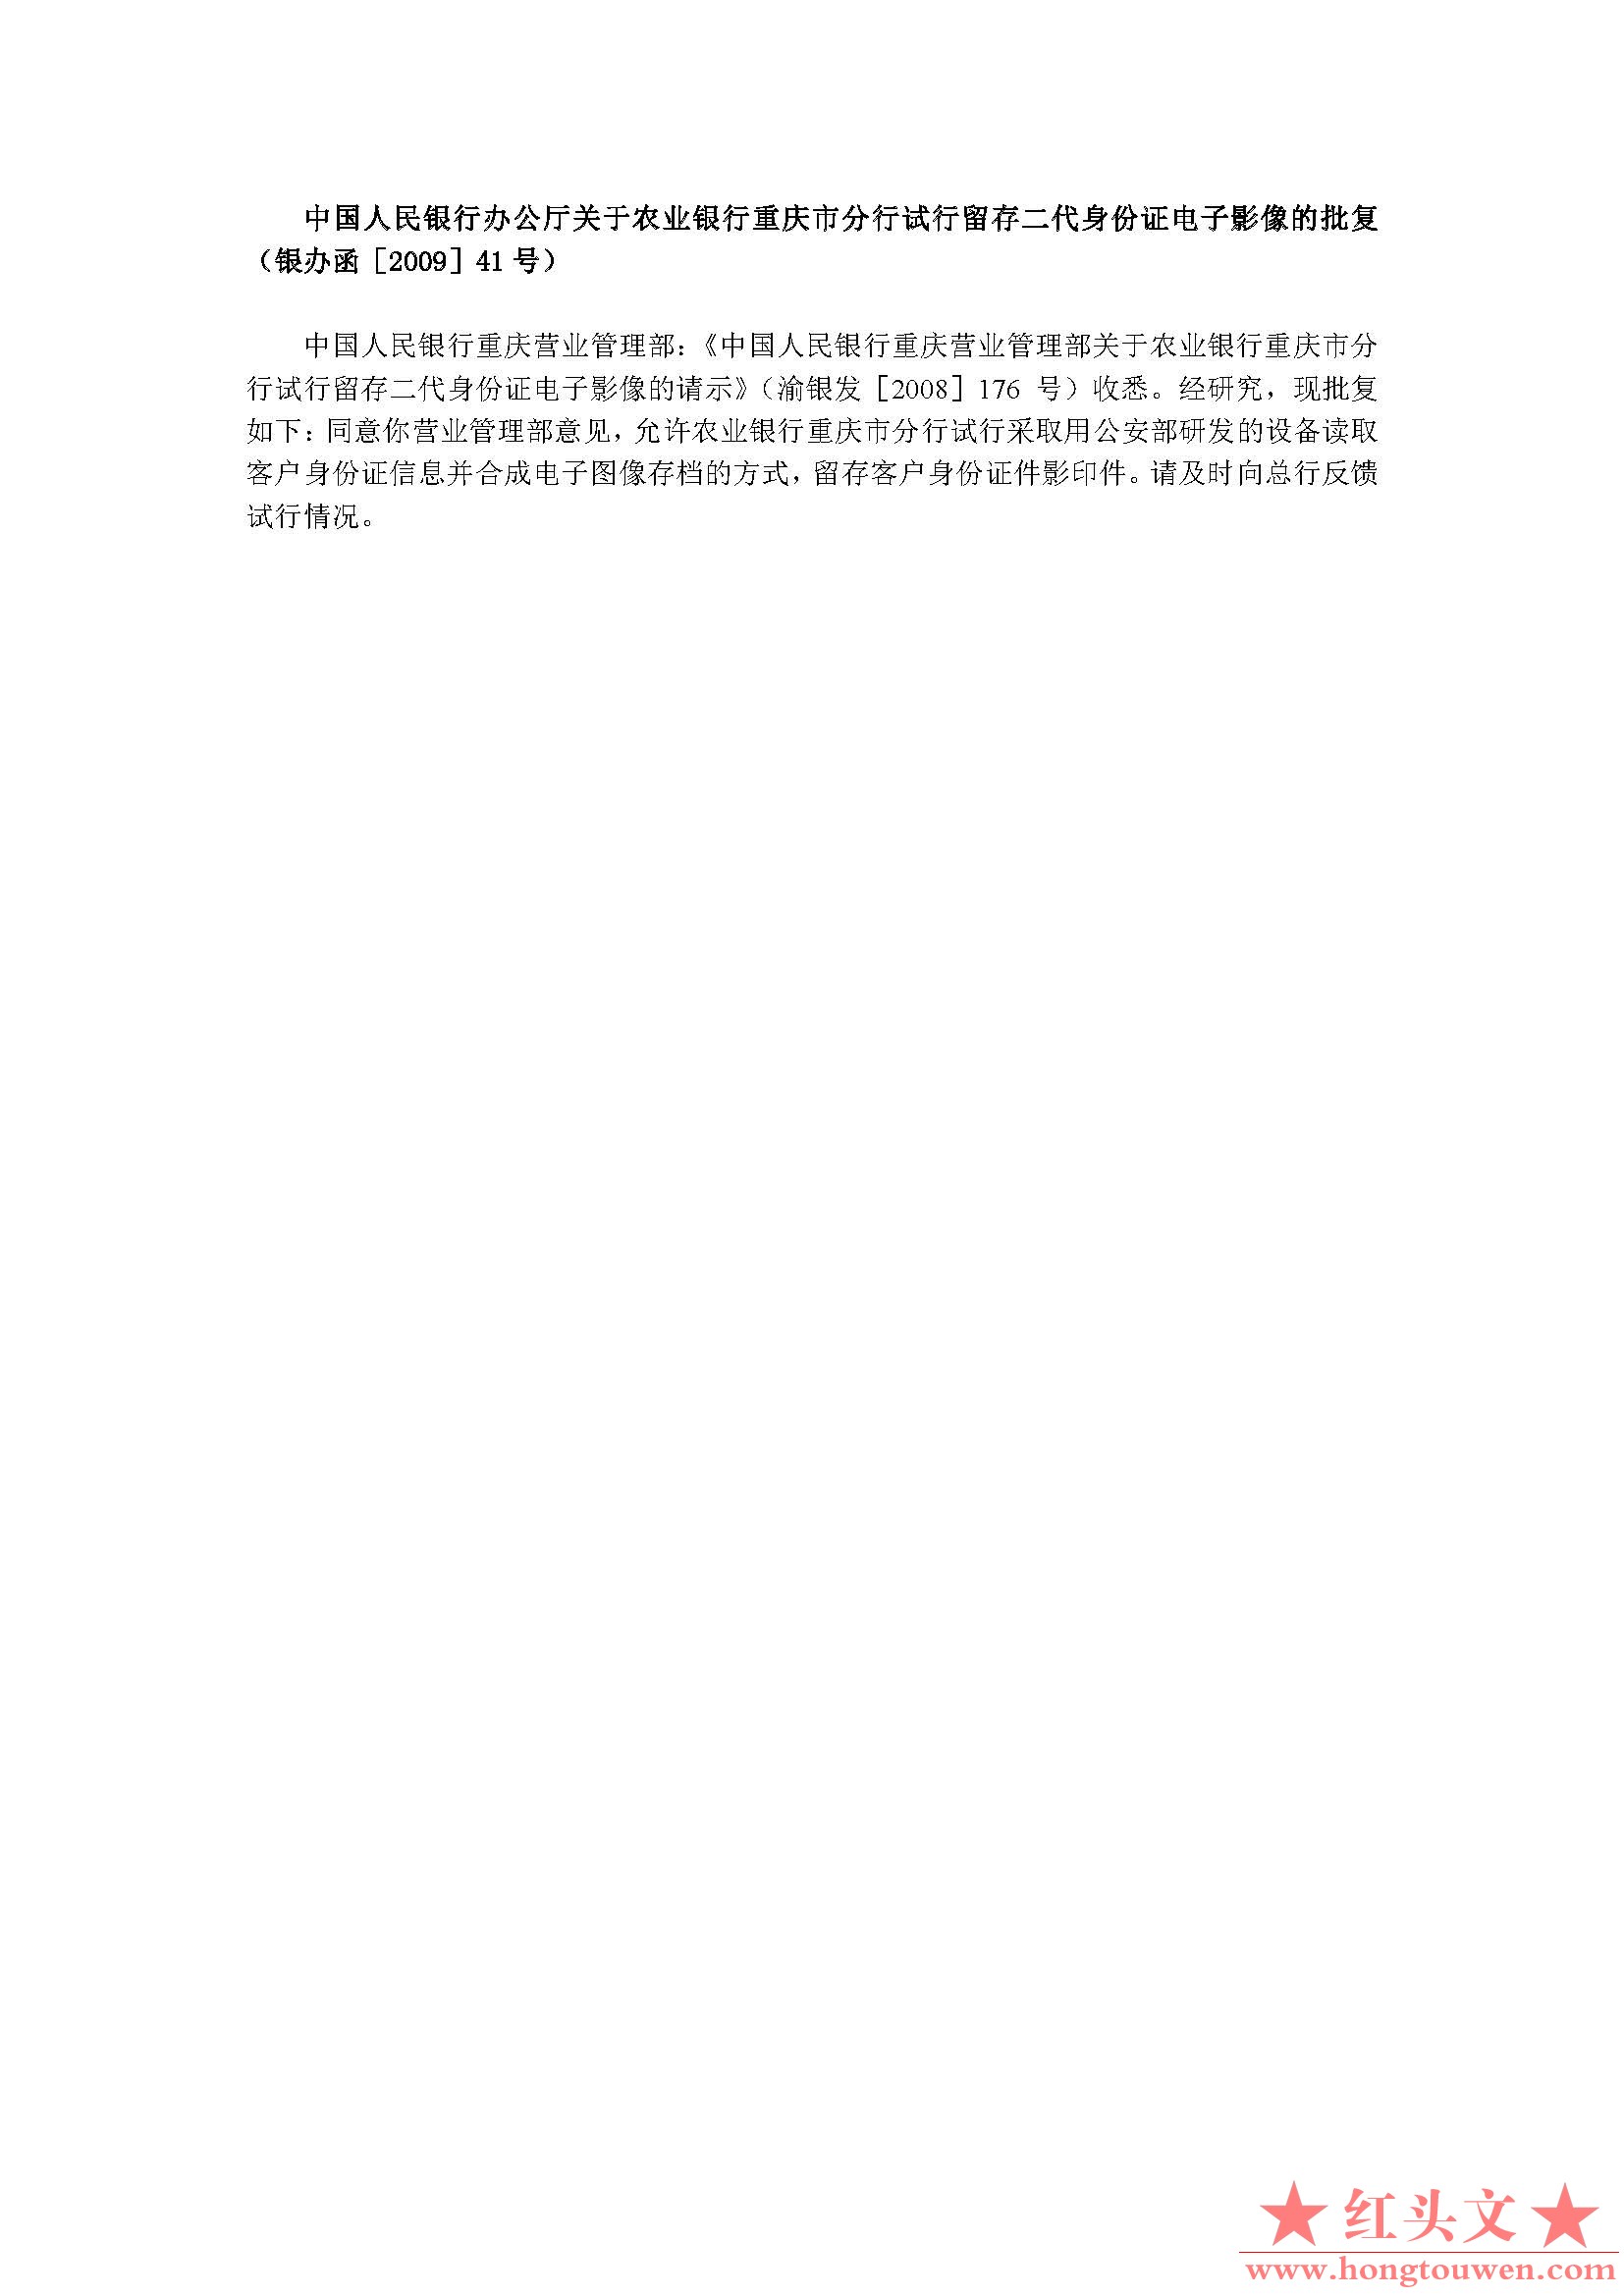 银办函[2009]41号-中国人民银行办公厅关于农业银行重庆市分行试行留存二代身份证电子.jpg